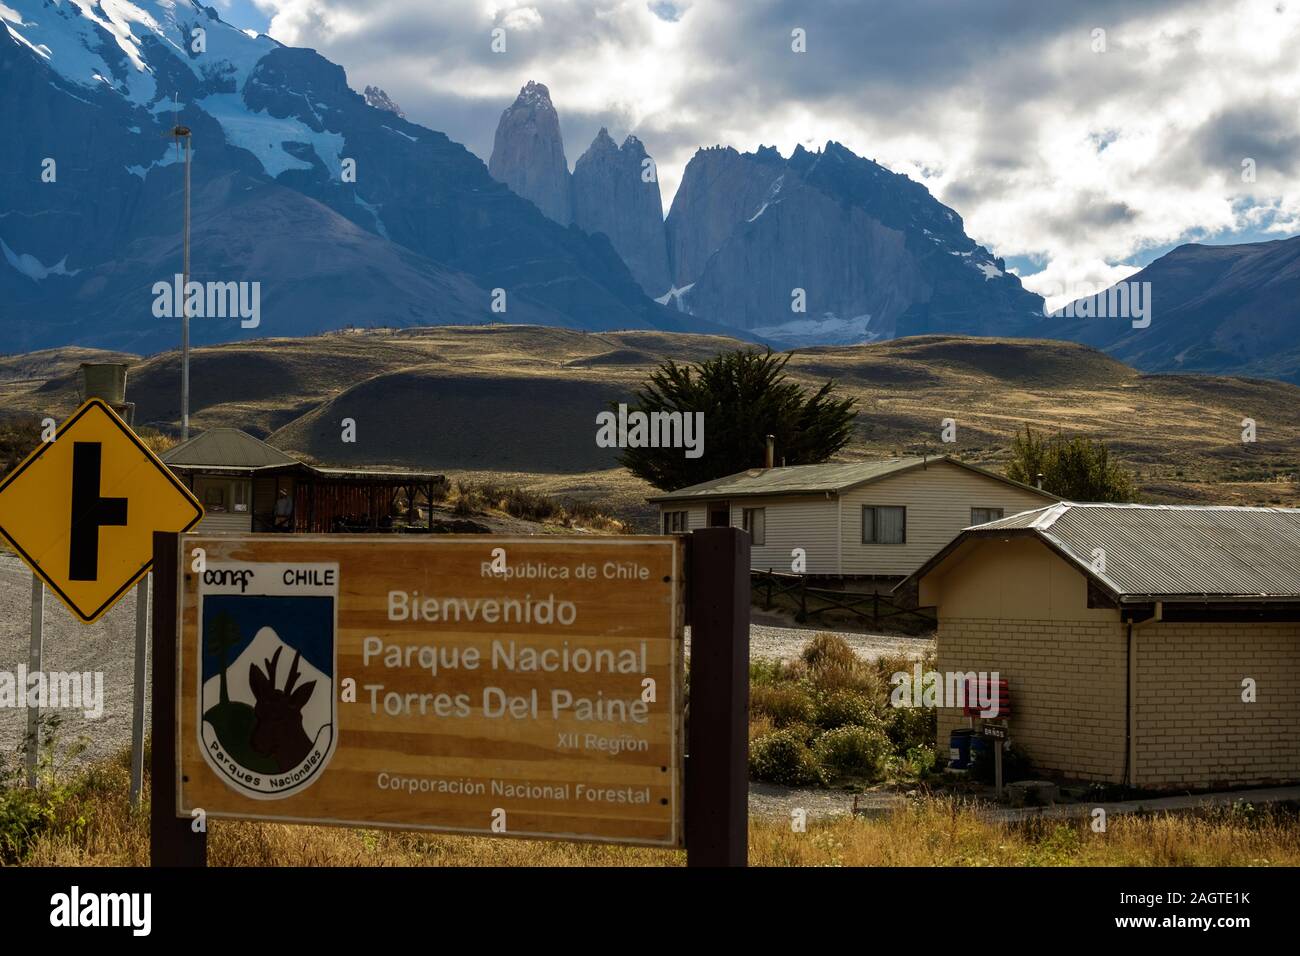 Les tours du paine et les cornes dominent la vue lorsque vous voyez le panneau 'Welcome Parc National Torres del Paine - National Forest Corporation'. Banque D'Images